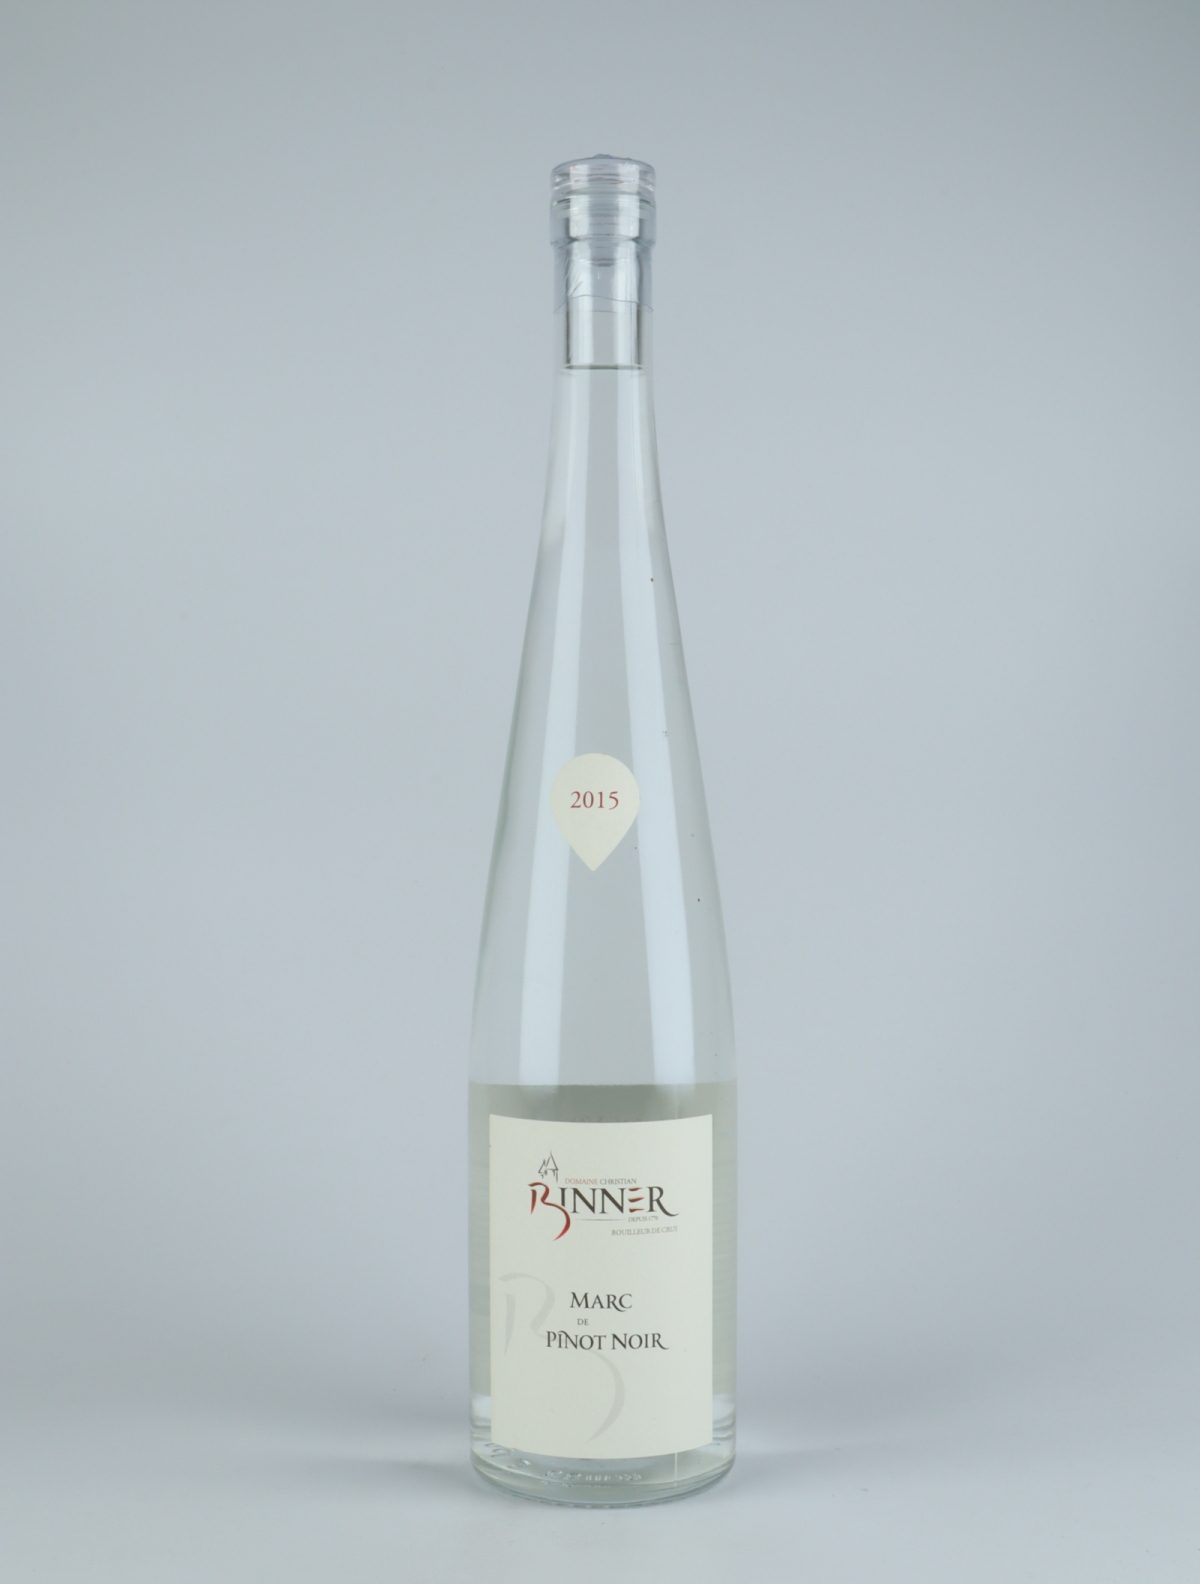 En flaske 2015 Marc de Pinot Noir Spiritus fra Domaine Christian Binner, Alsace i Frankrig